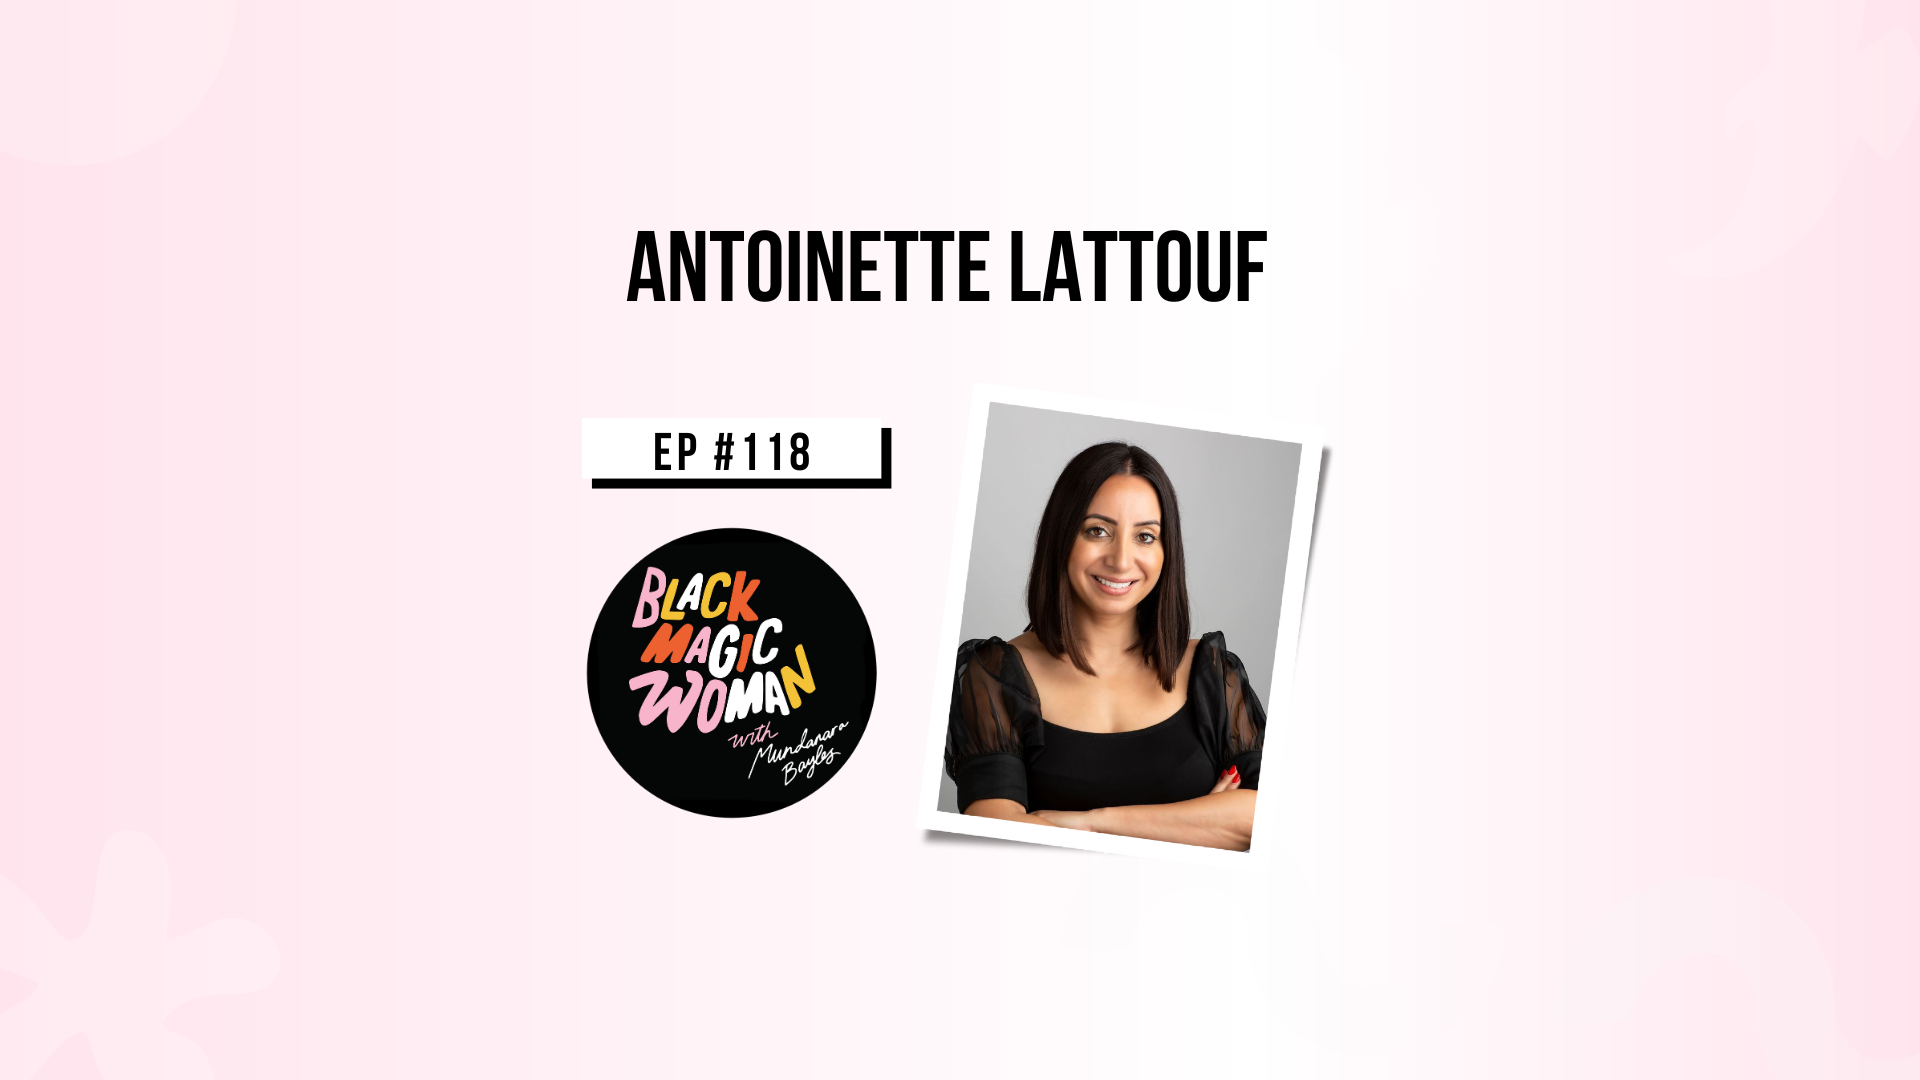 Antoinette Lattouf